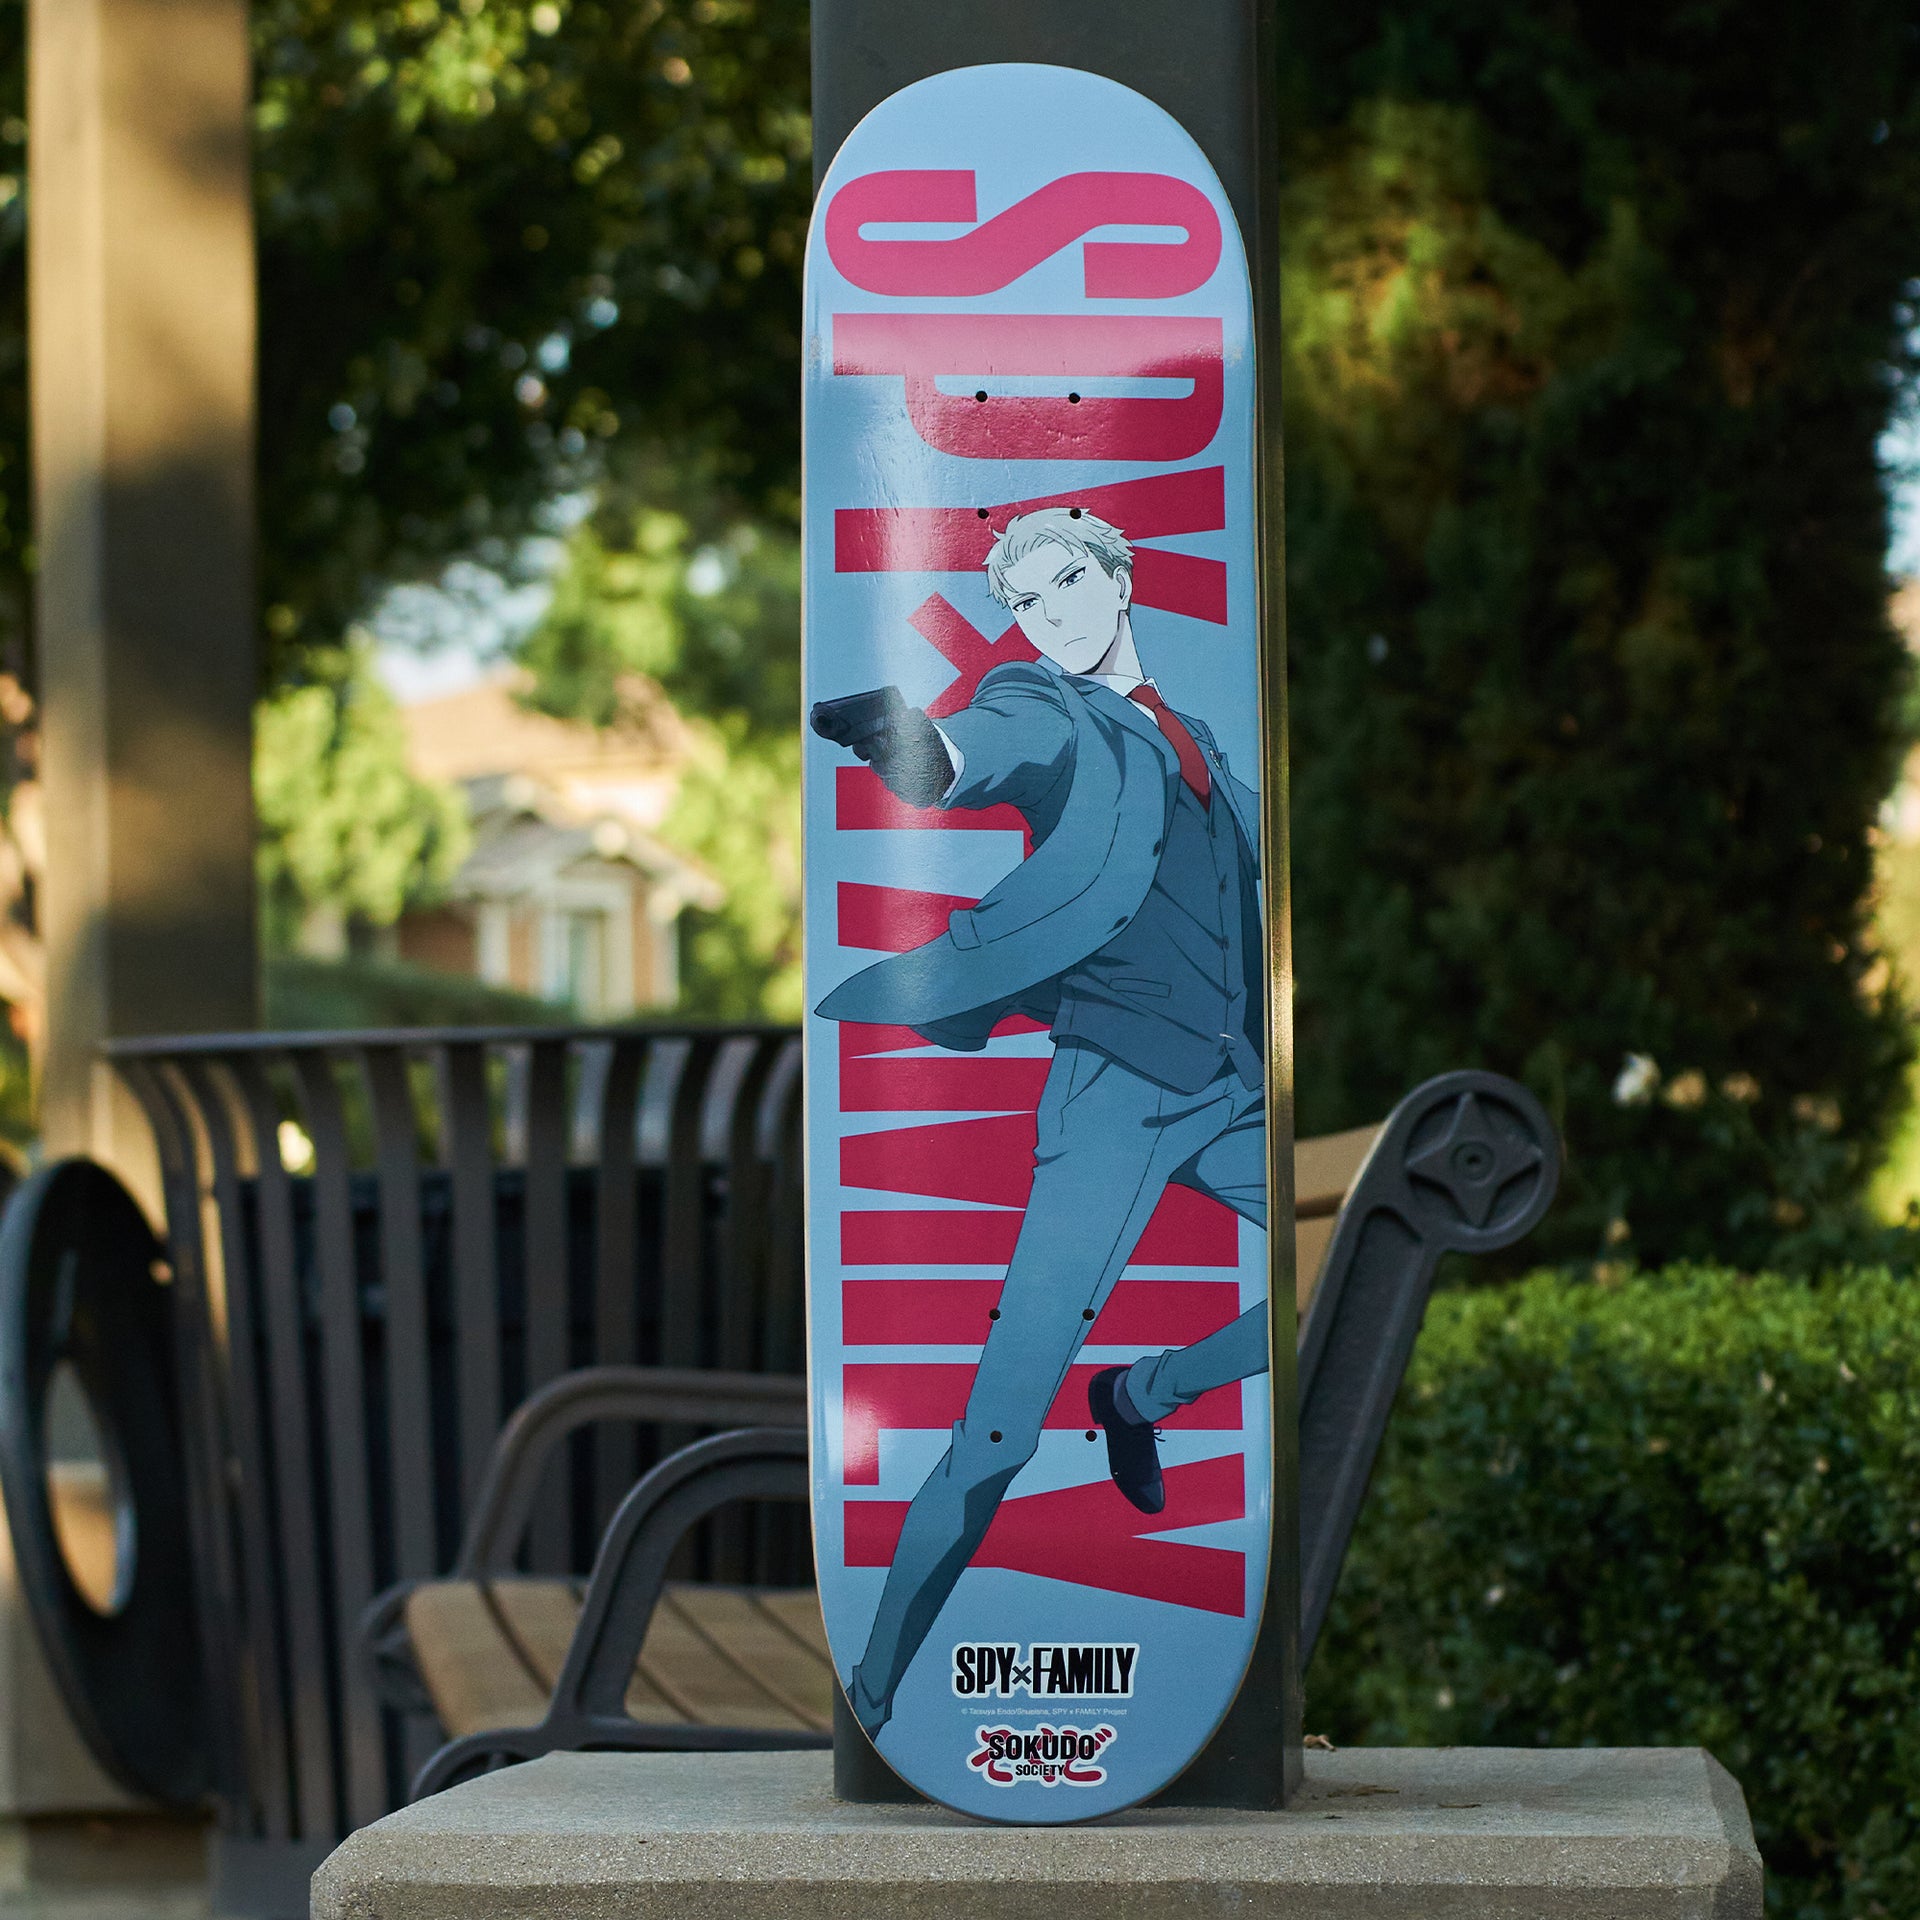 Sokudo Society Spy x Family Loid Skateboard Deck